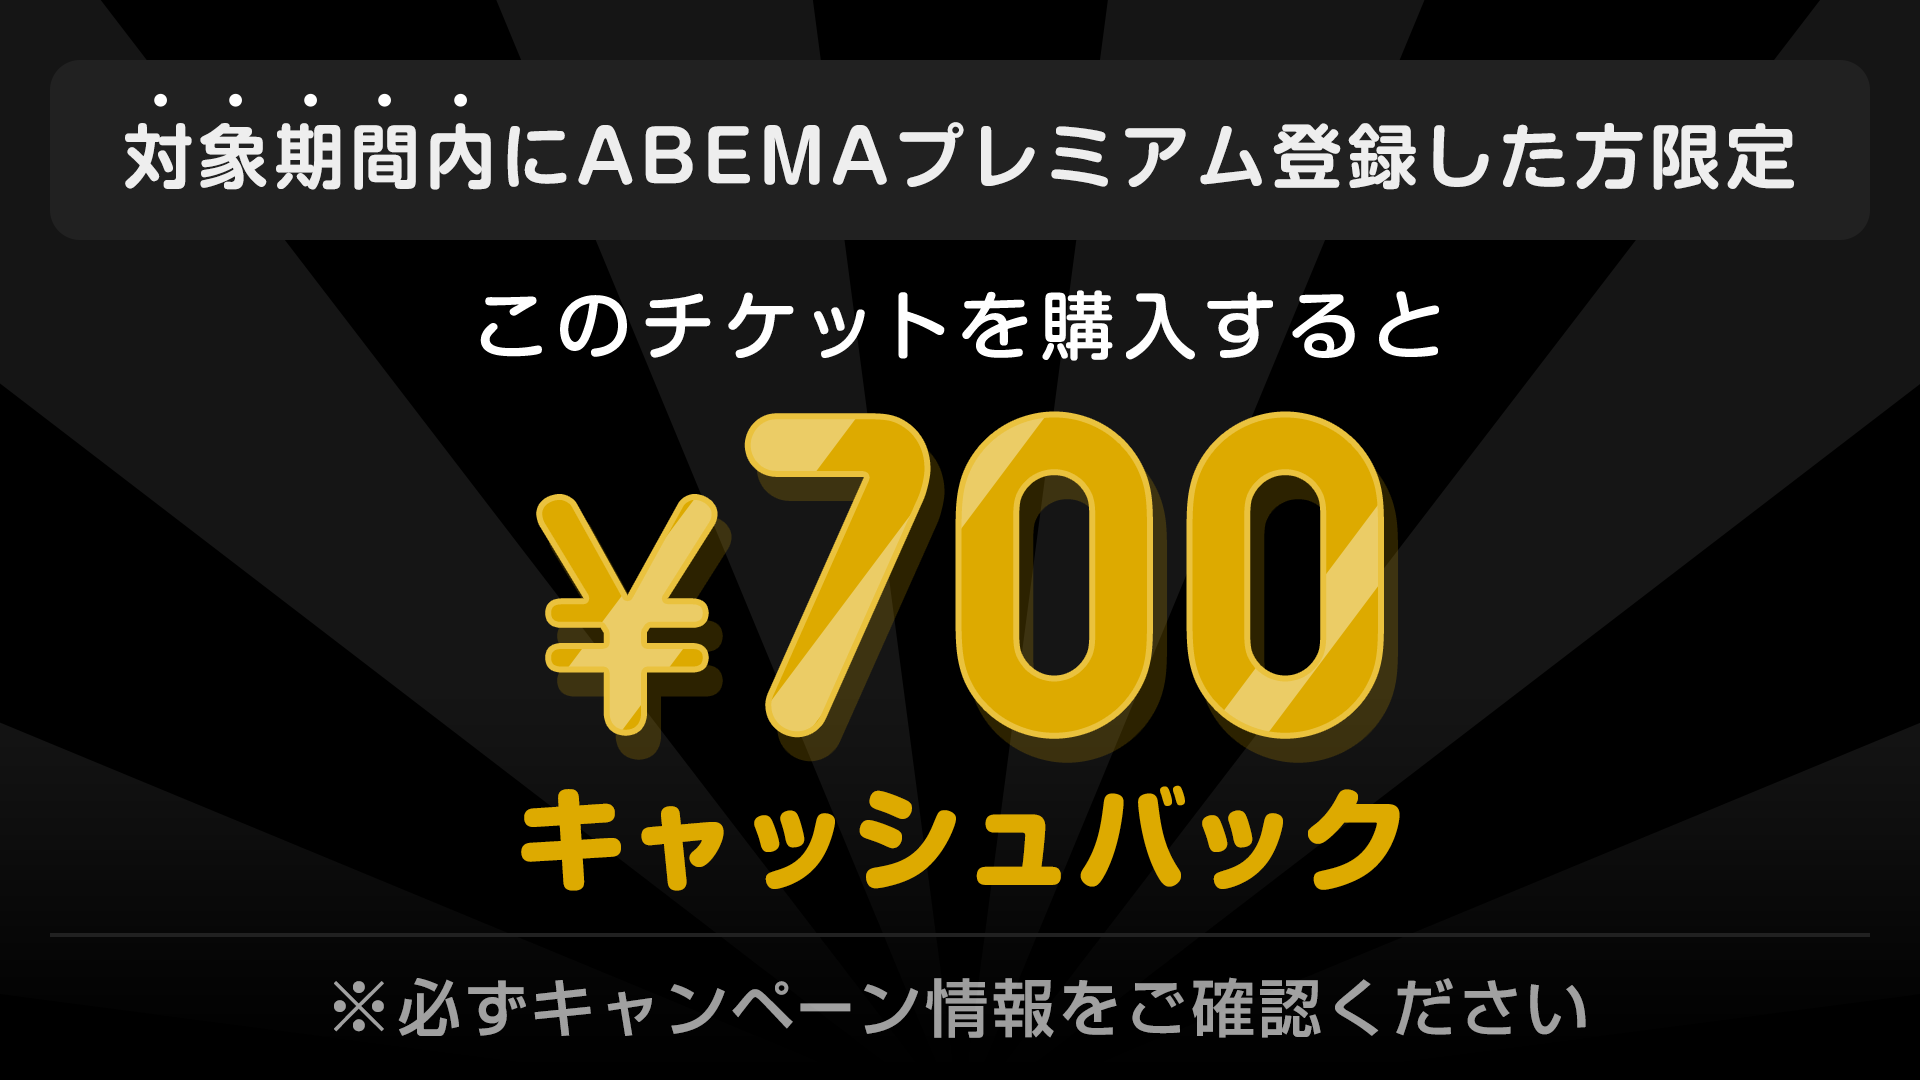 対象期間内にABEMAプレミアム登録した方限定 このチケットを購入すると ¥700キャッシュバック